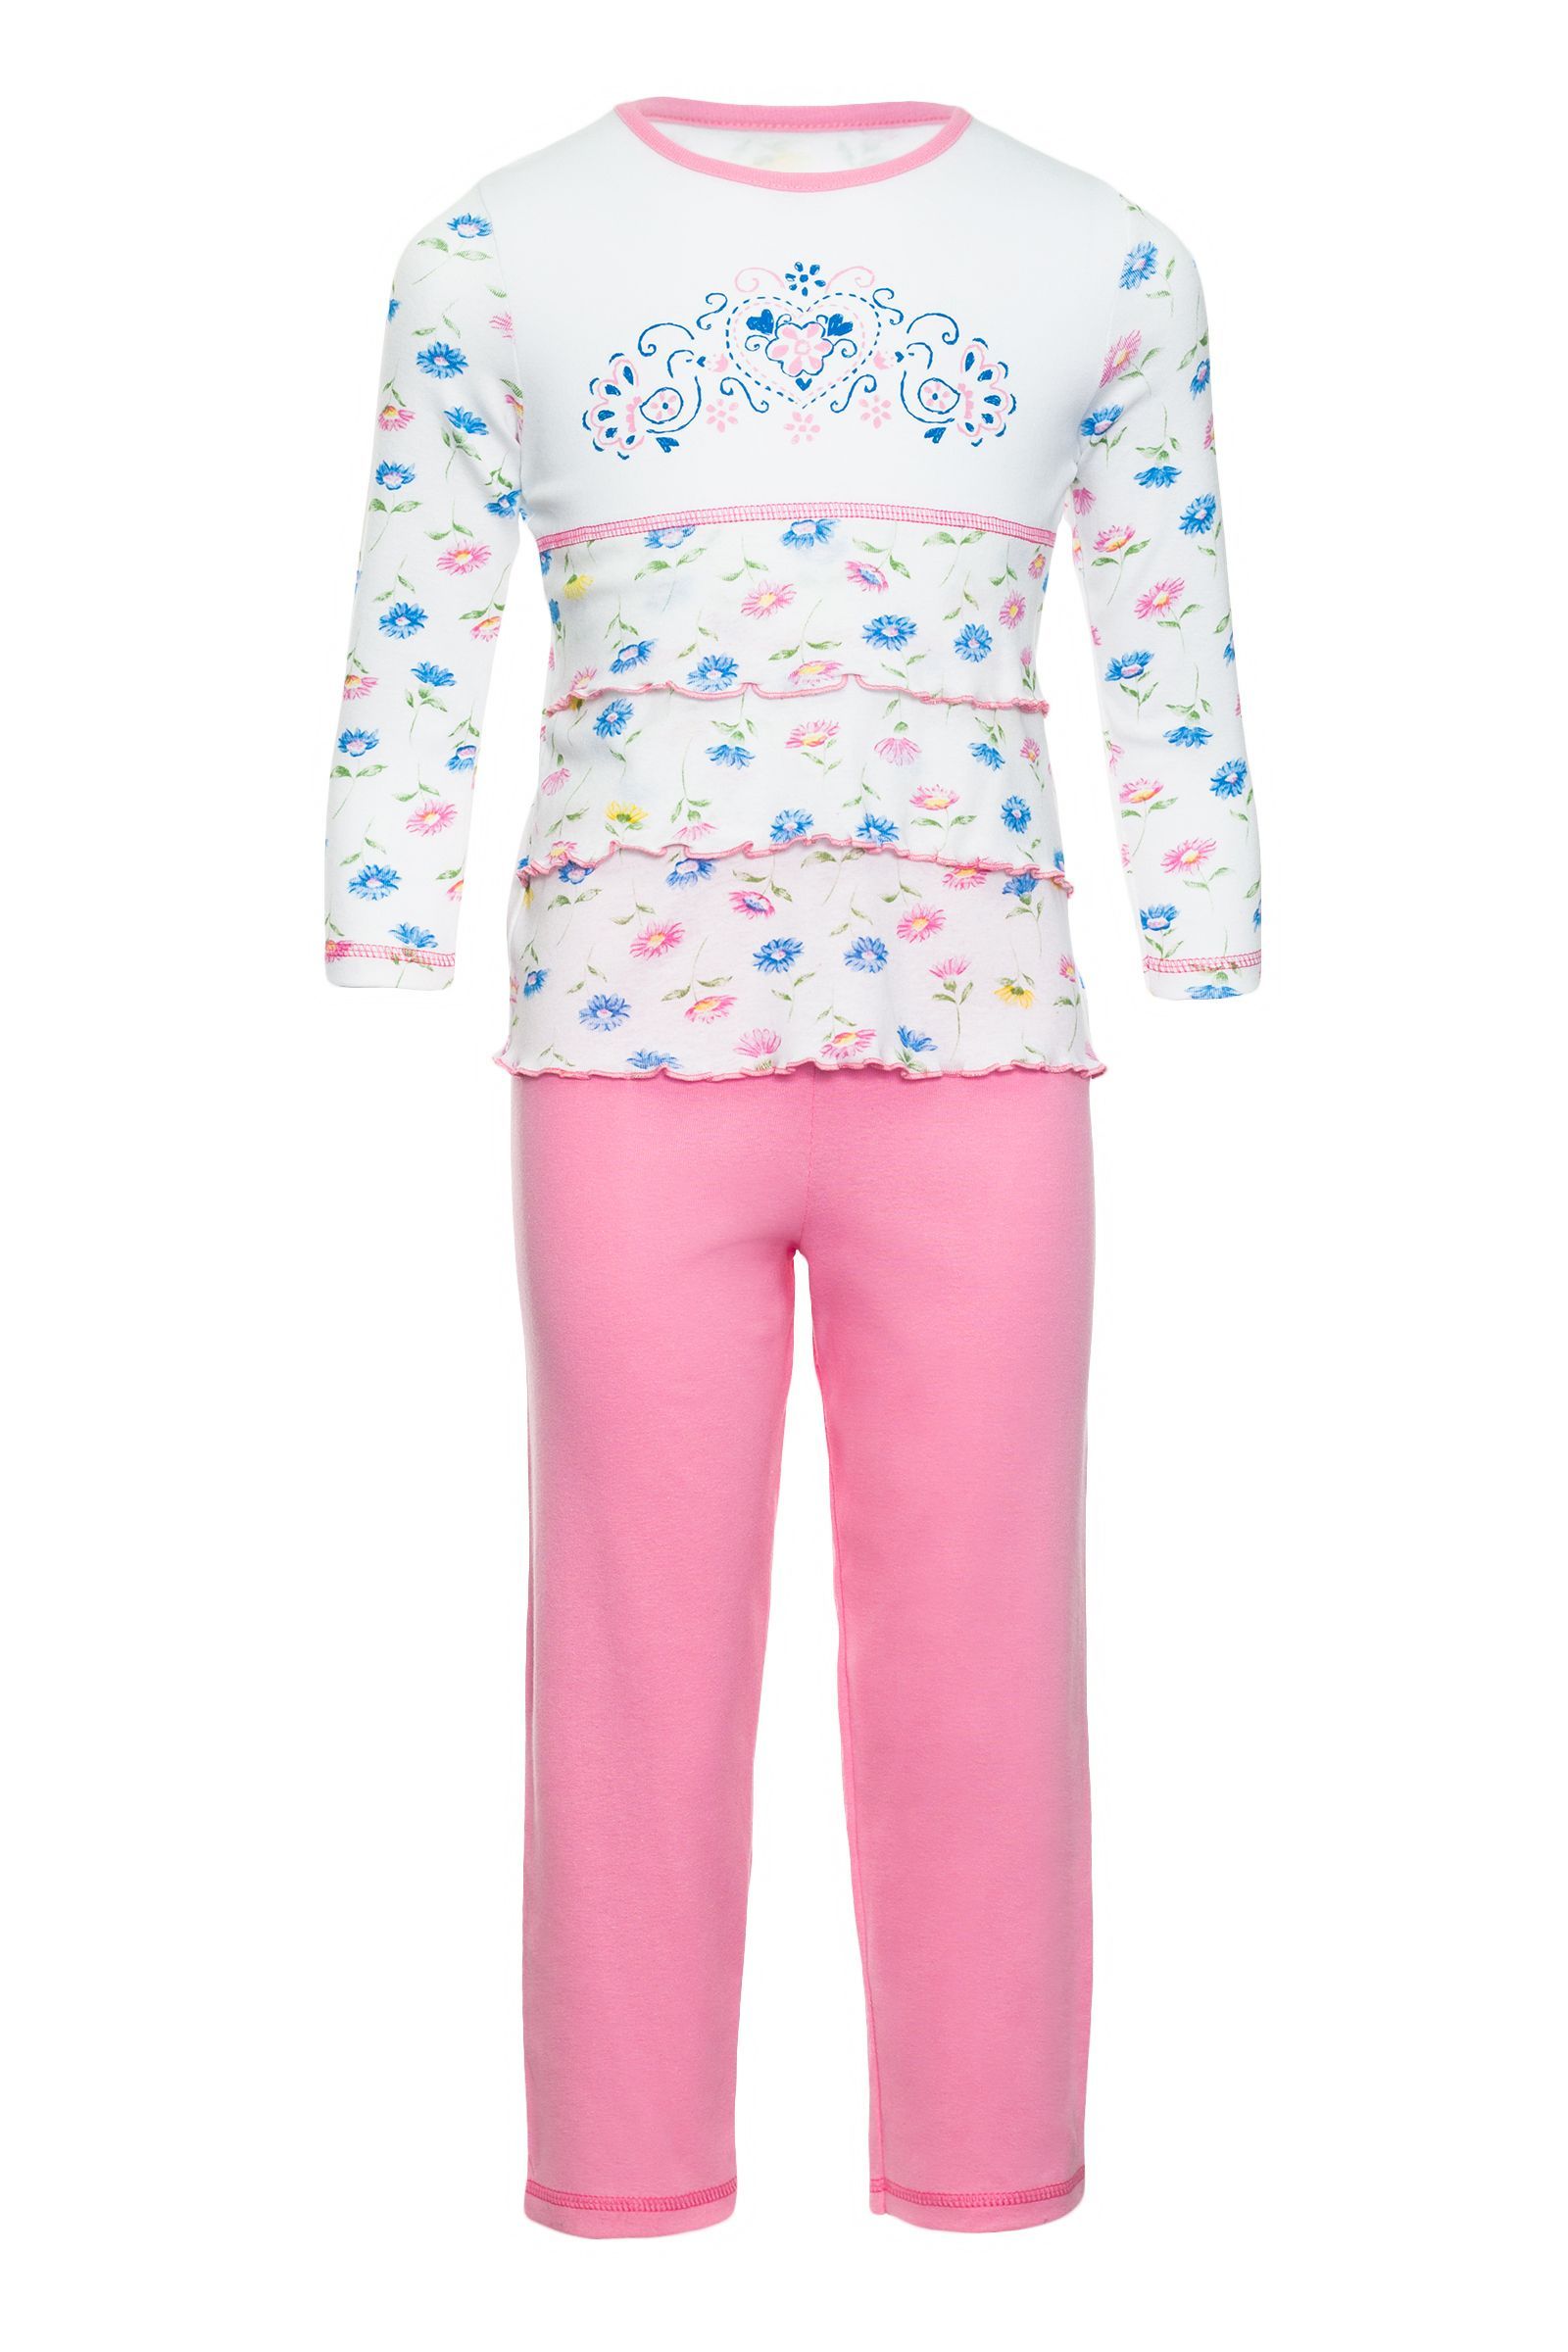 Пижама-ПЖ03-1241 оптом от производителя детской одежды 'Алёна'